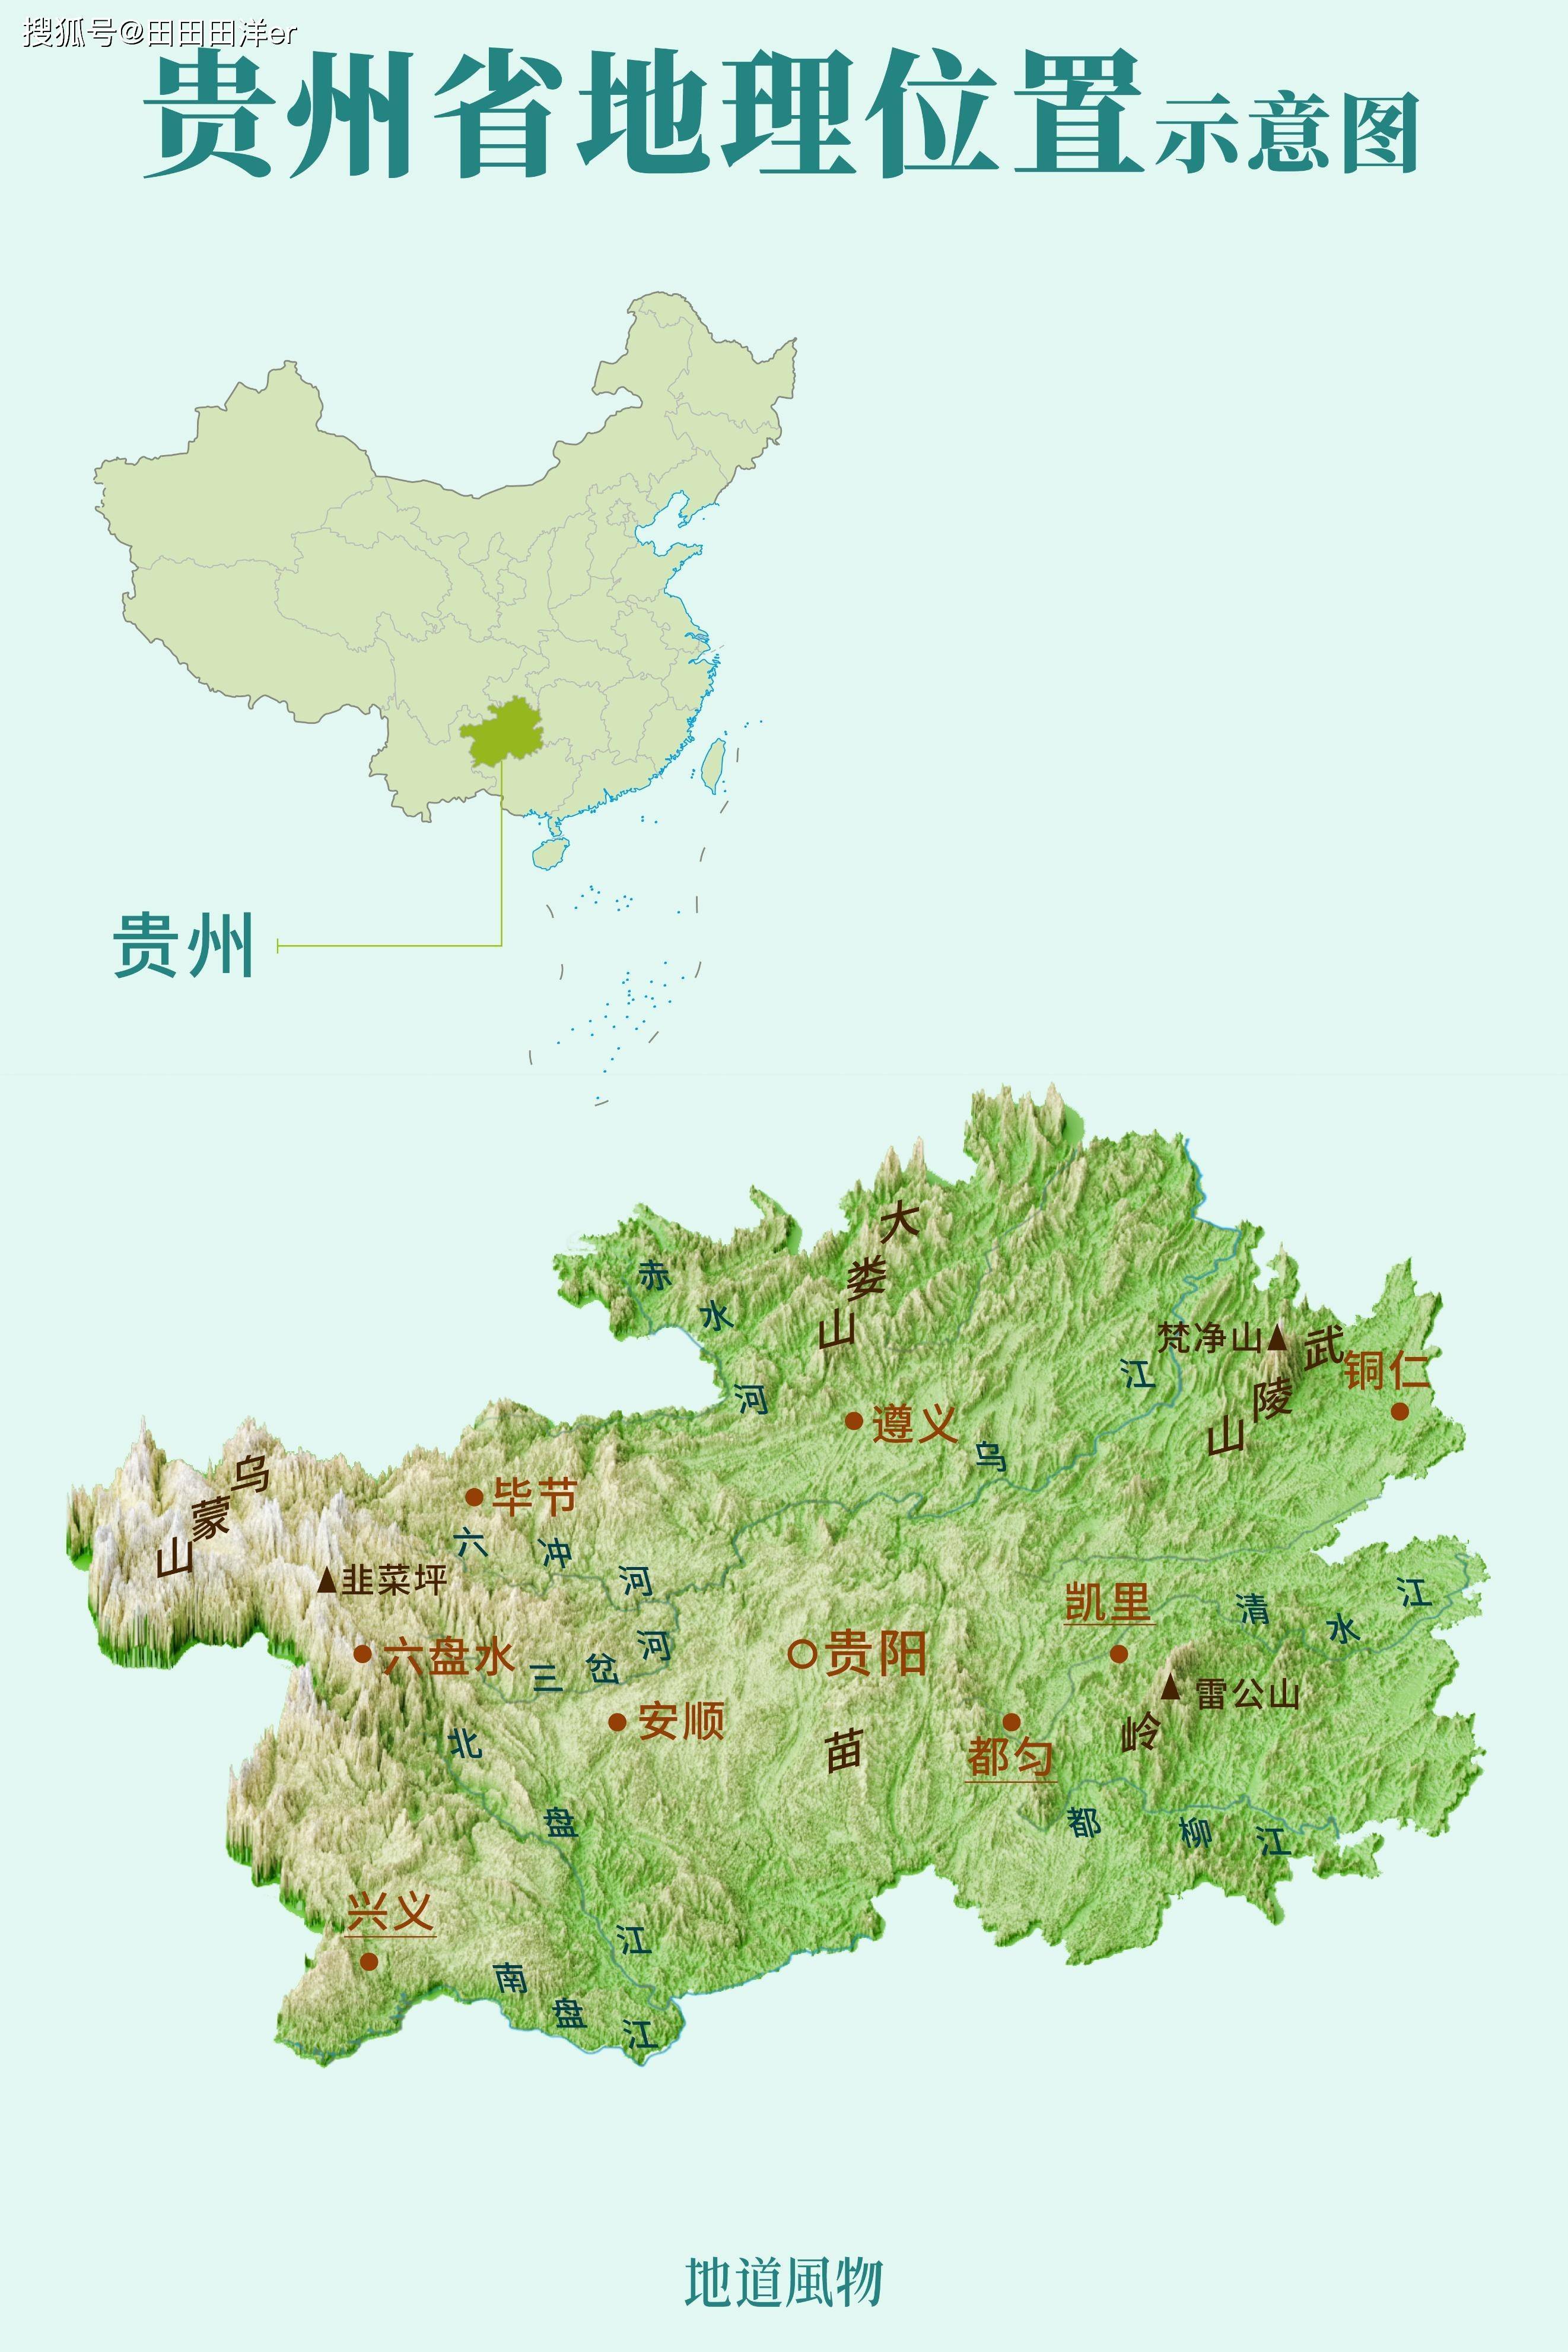 贵州地理位置示意图